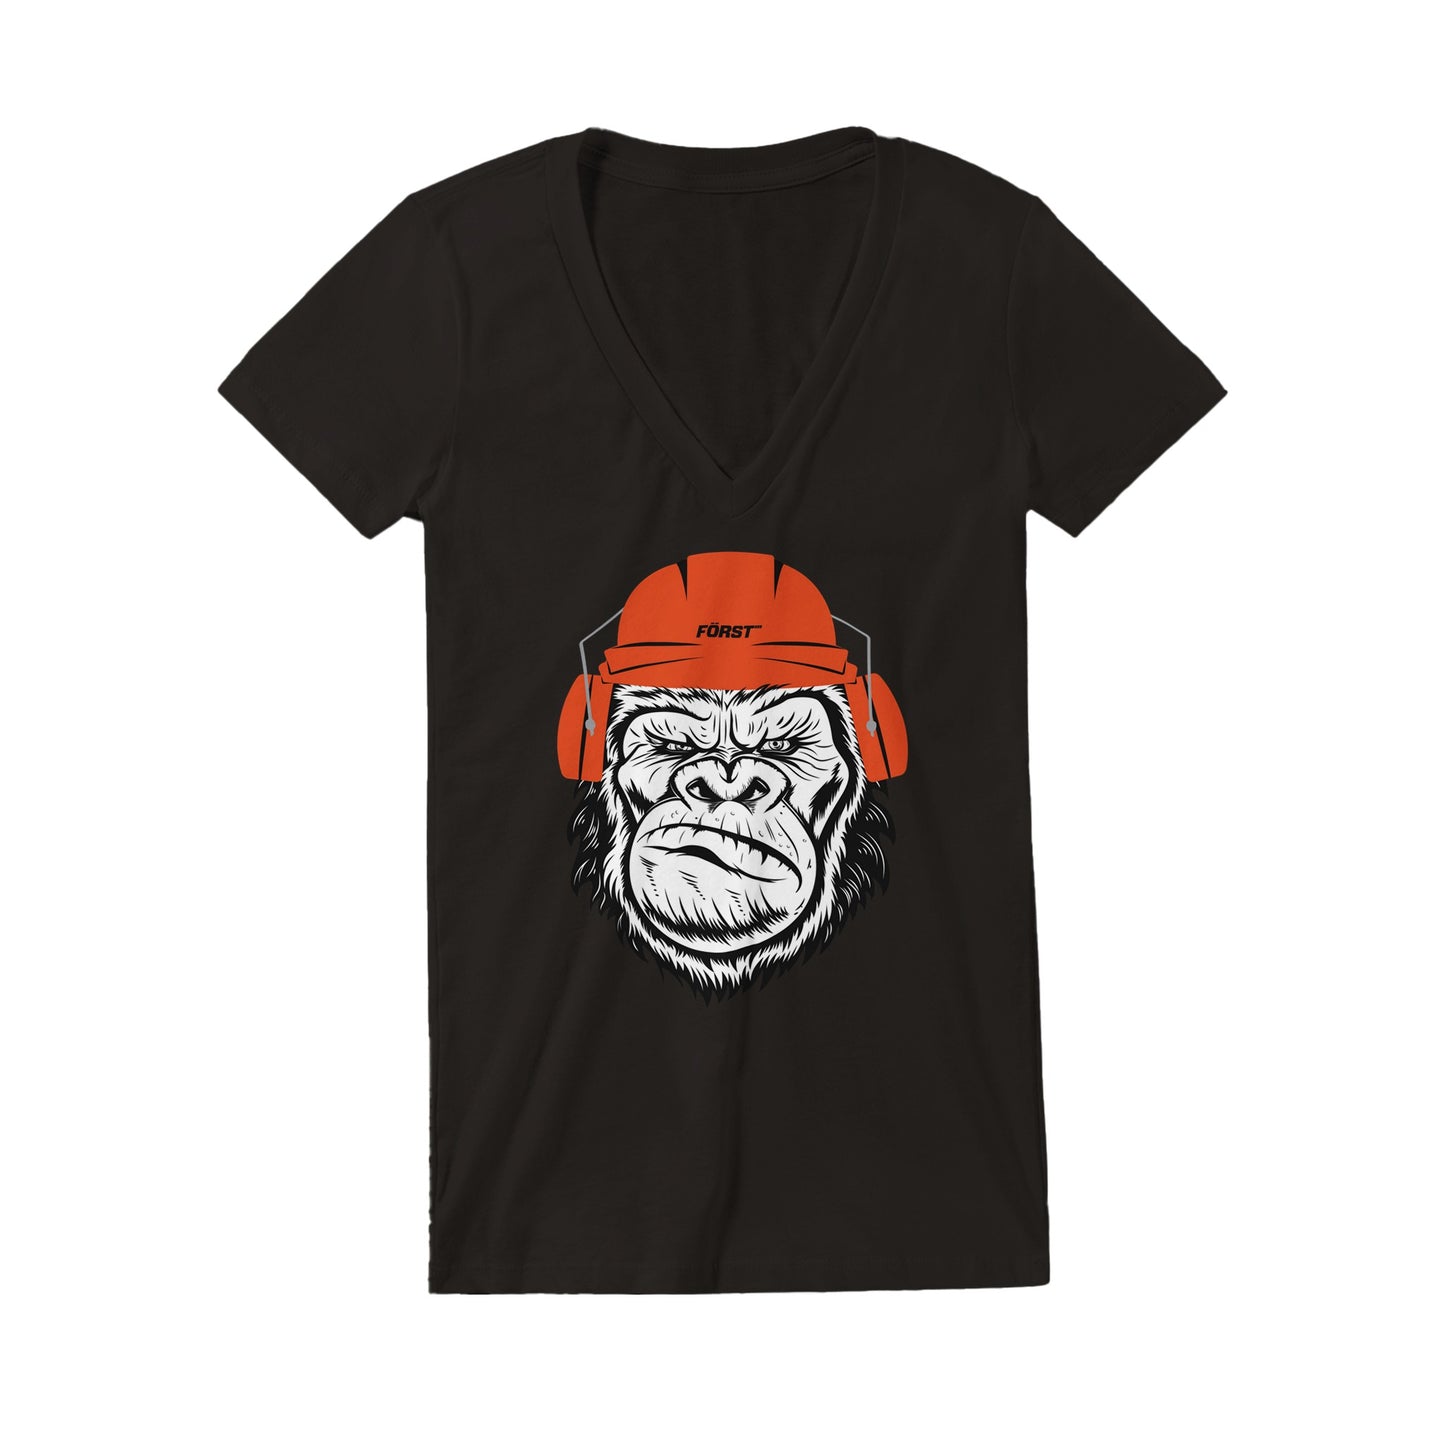 Gorilla Premium Women's V-Neck T-shirt